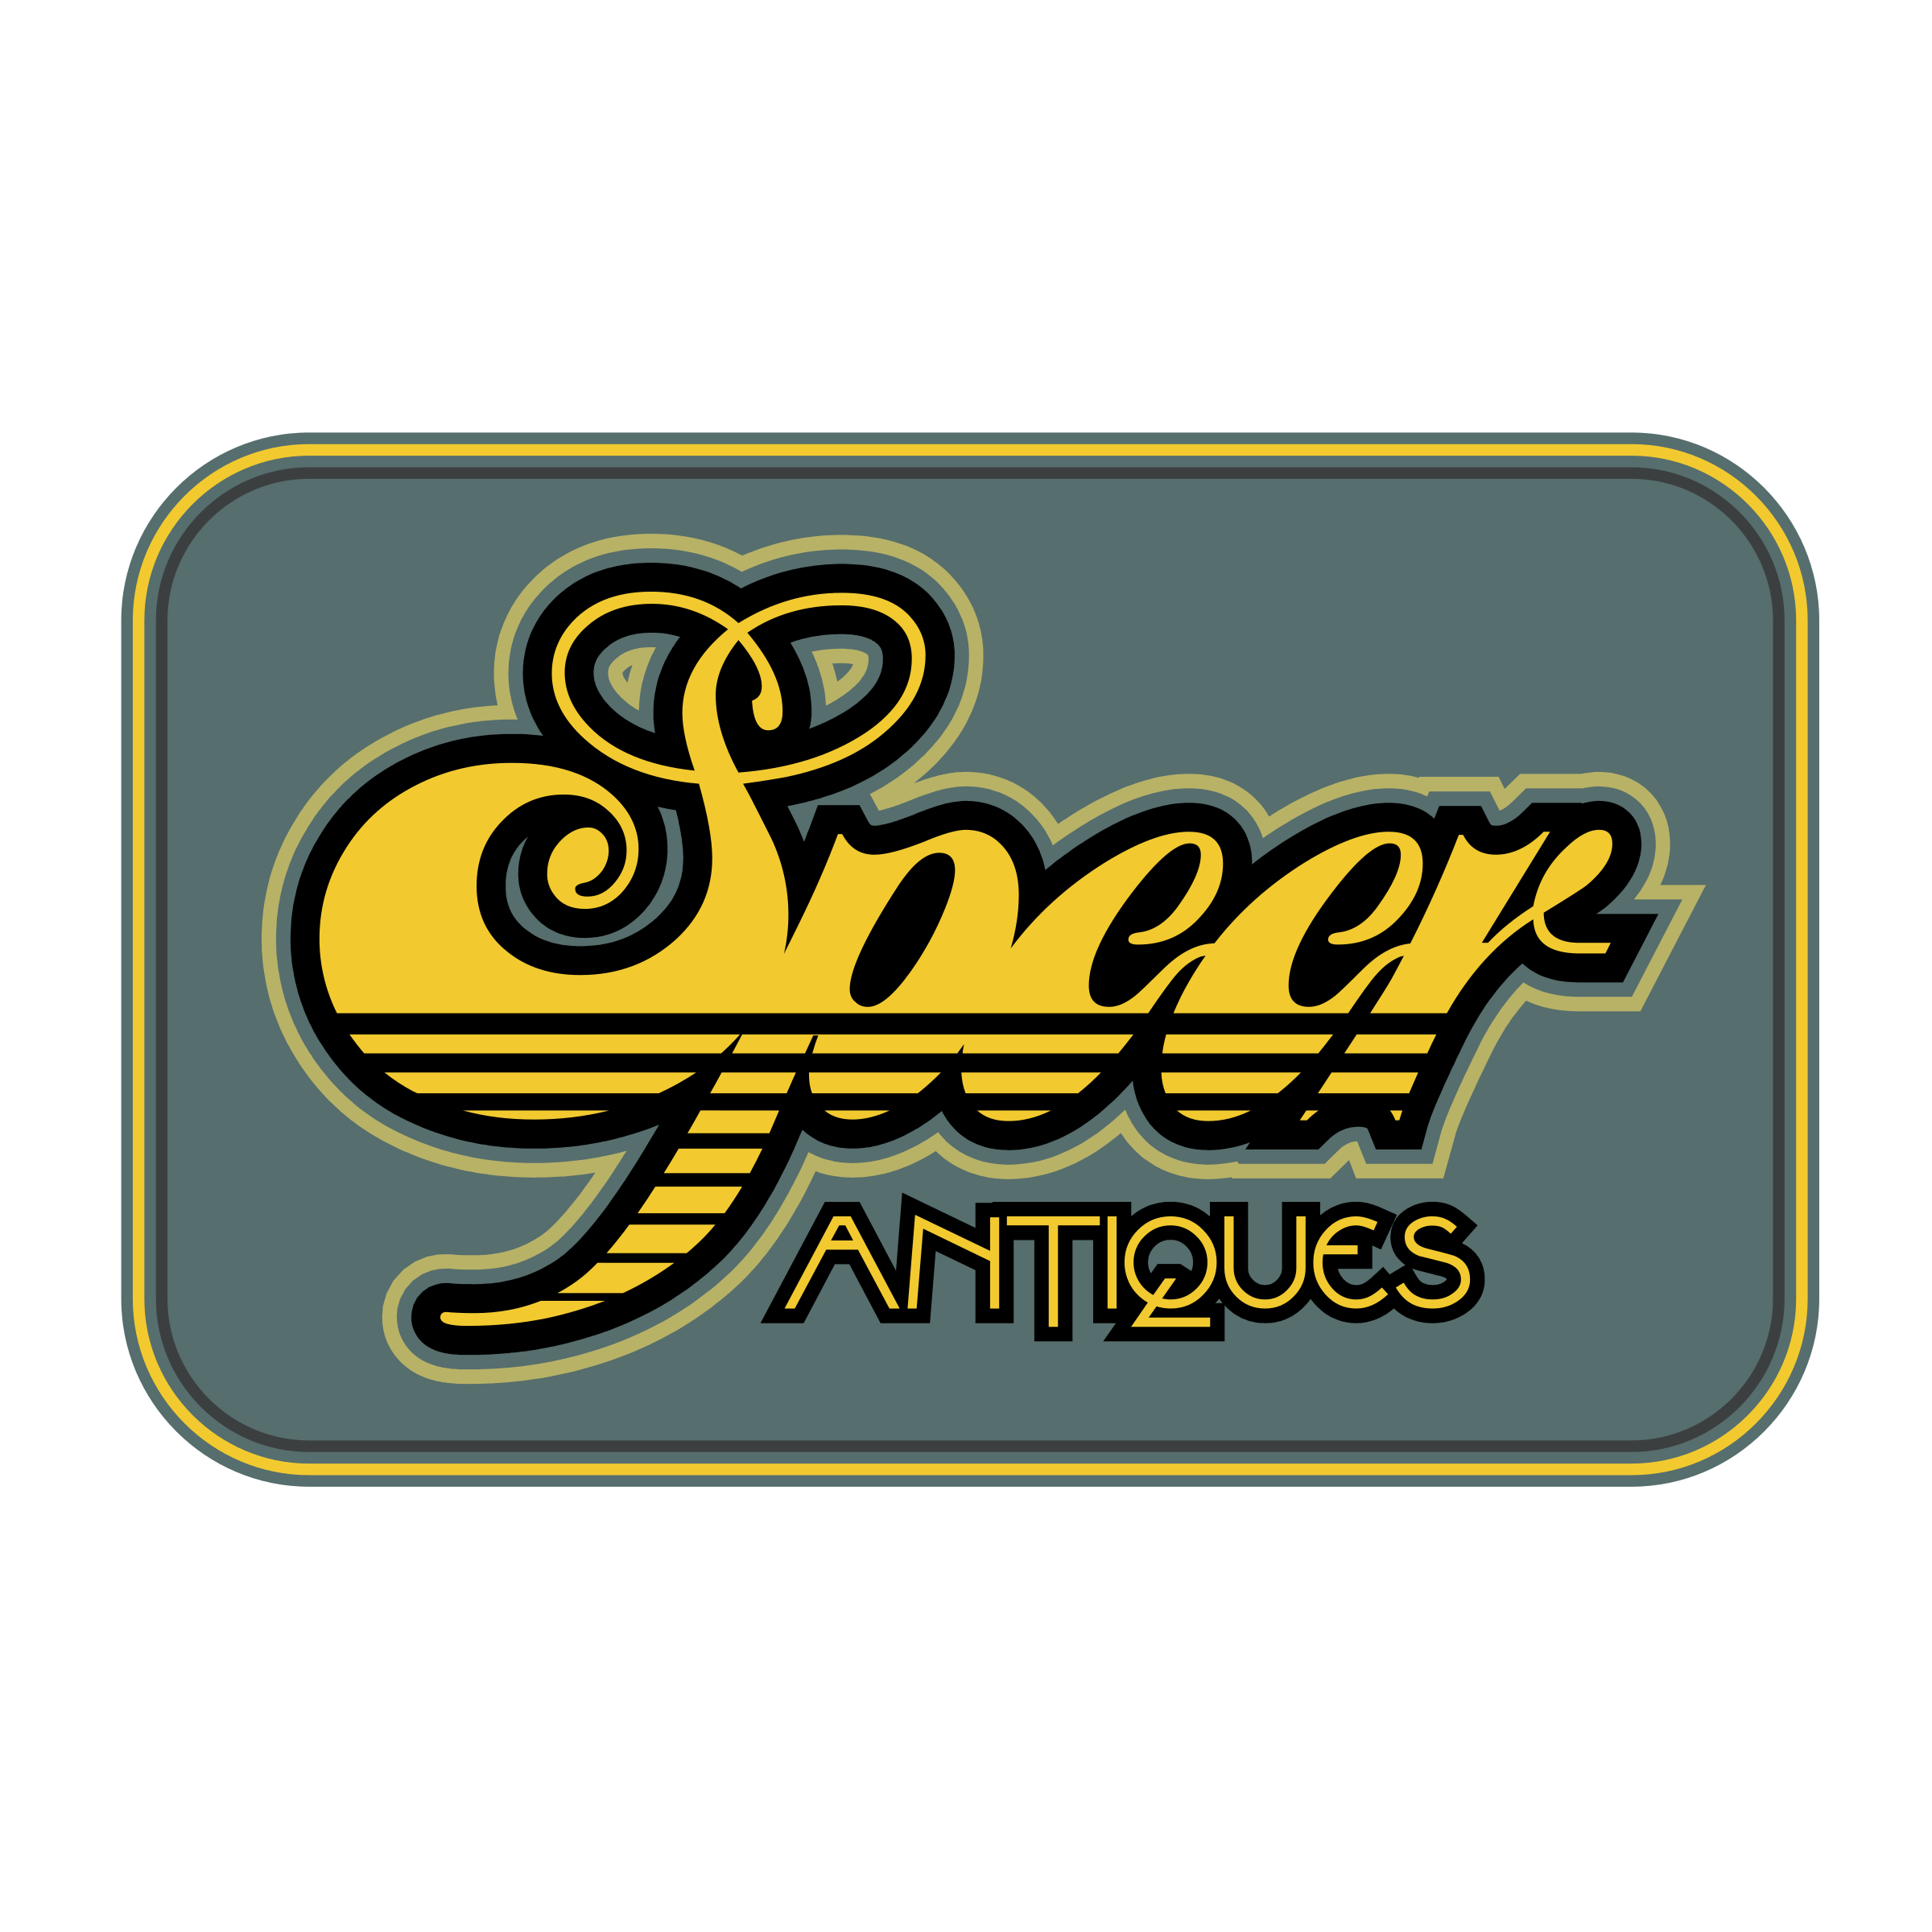 Speer Logo - Speer Antiques Logo PNG Transparent & SVG Vector - Freebie Supply